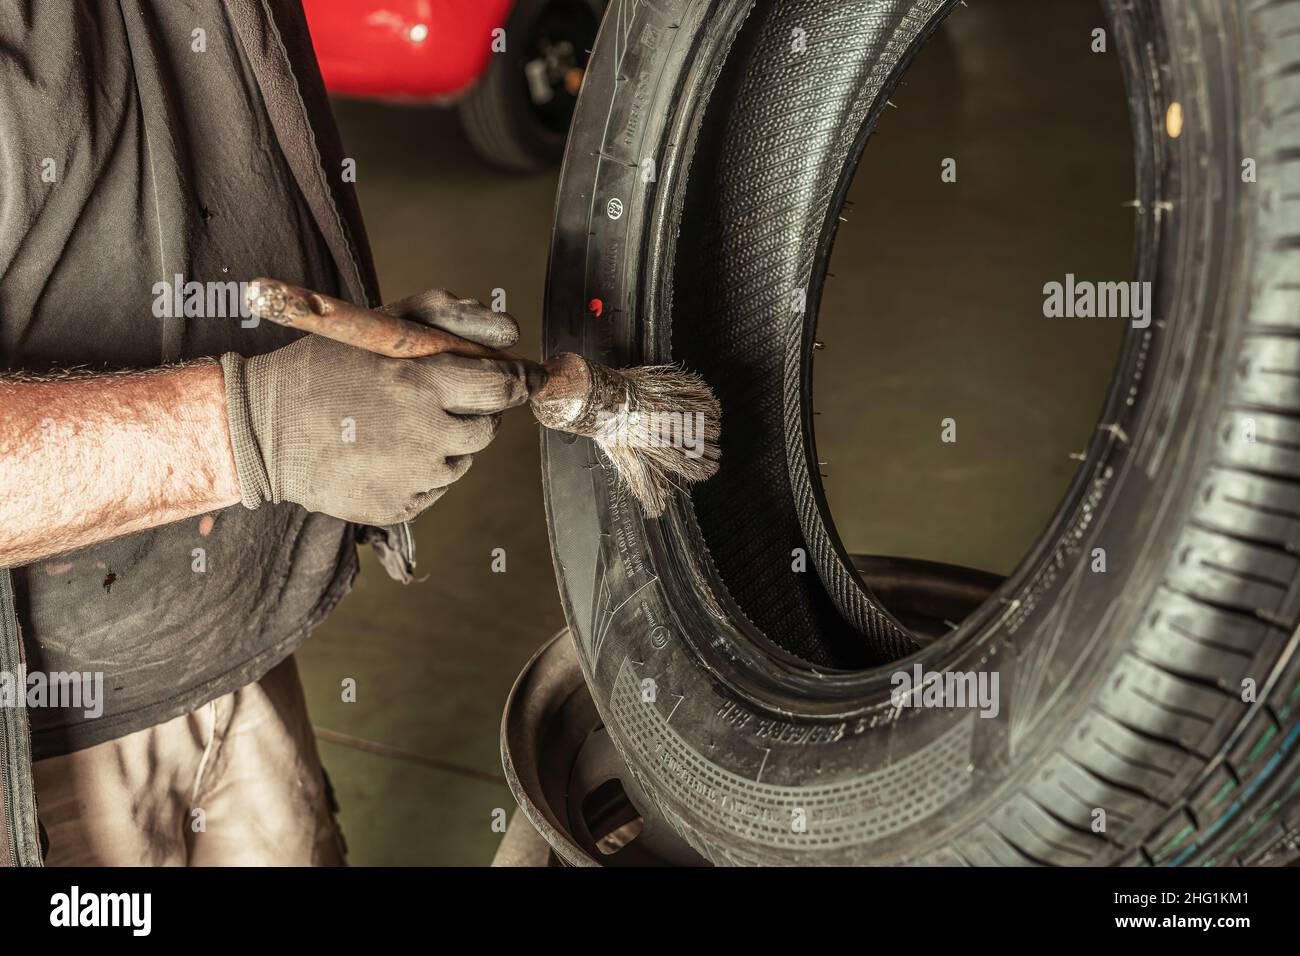 Uomo che applica lubrificante a una ruota in un'officina meccanica. Foto Stock